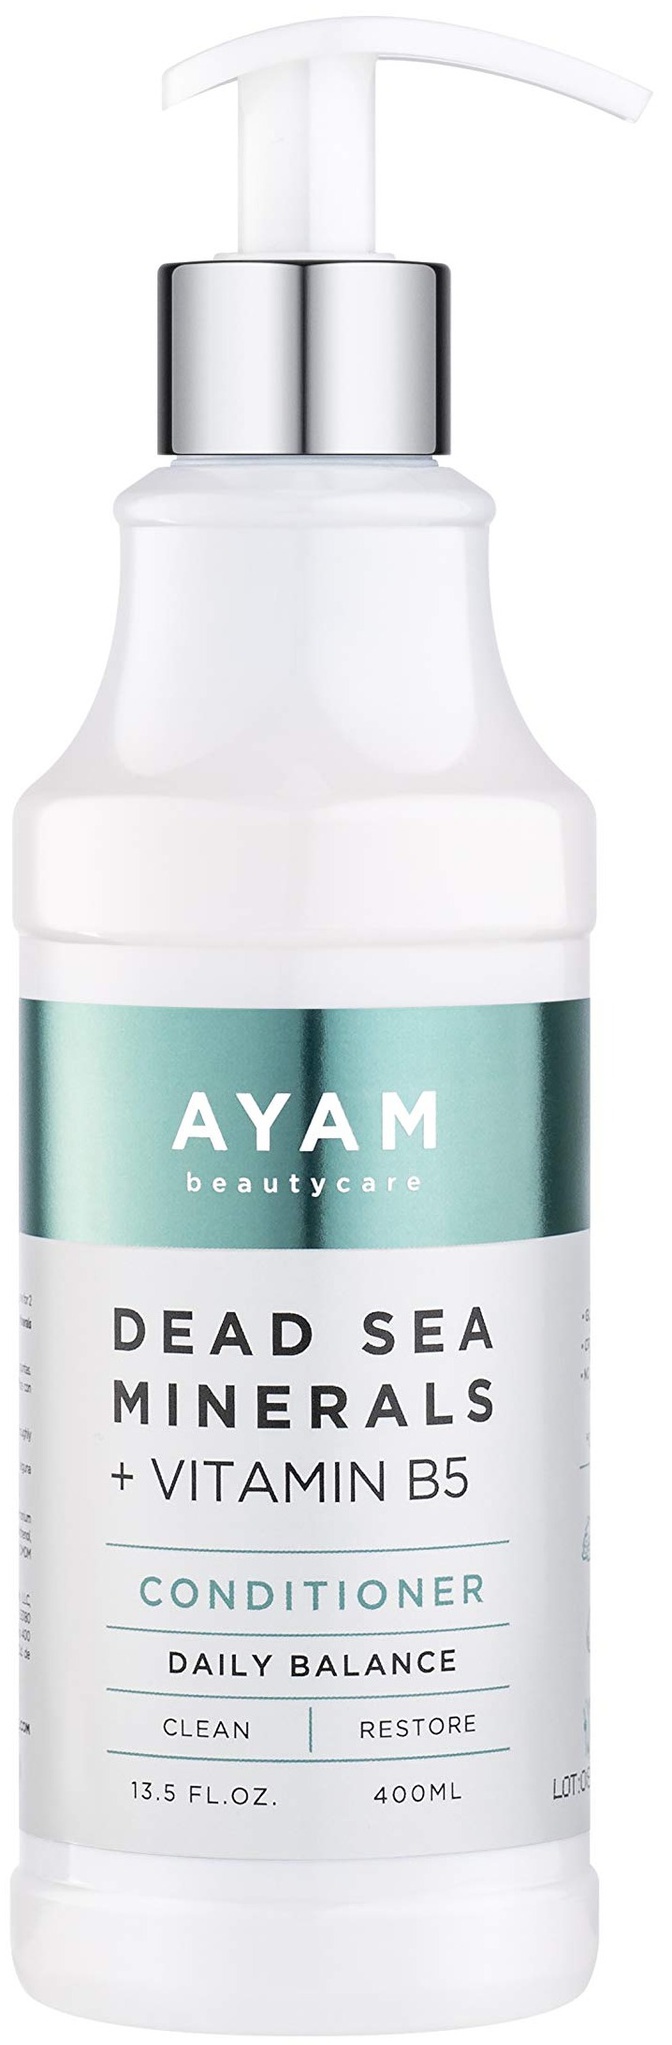 Ayam Beauty Care Dead Sea Minerals + Vitamin B5 Conditioner